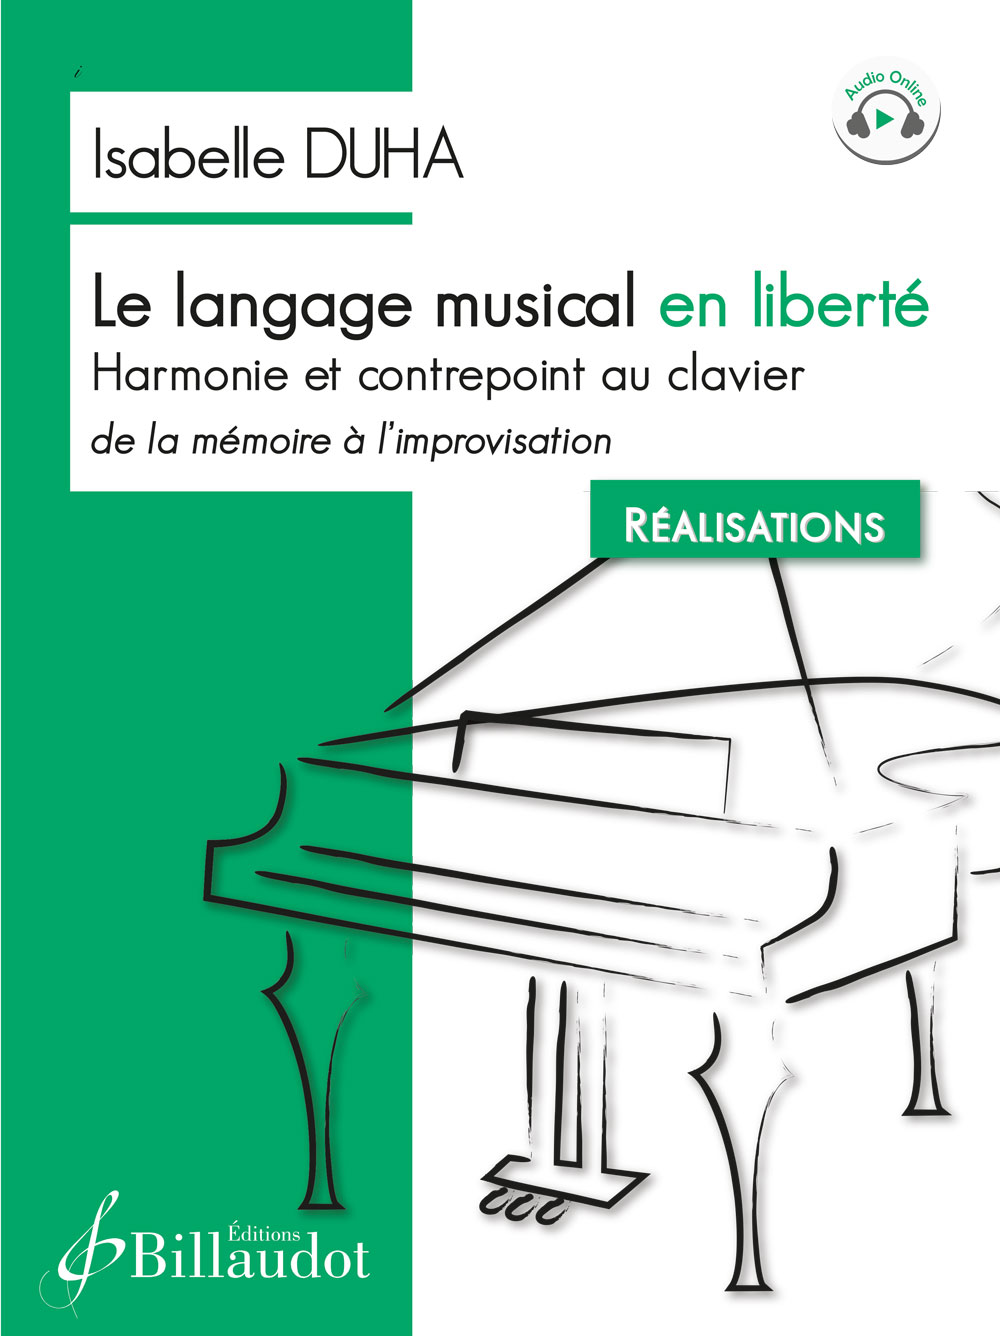 Le langage musical en libert - Harmonie et contrepoint au clavier, de la mmoire  l?improvisation - Ralisations (DUHA ISABELLE)